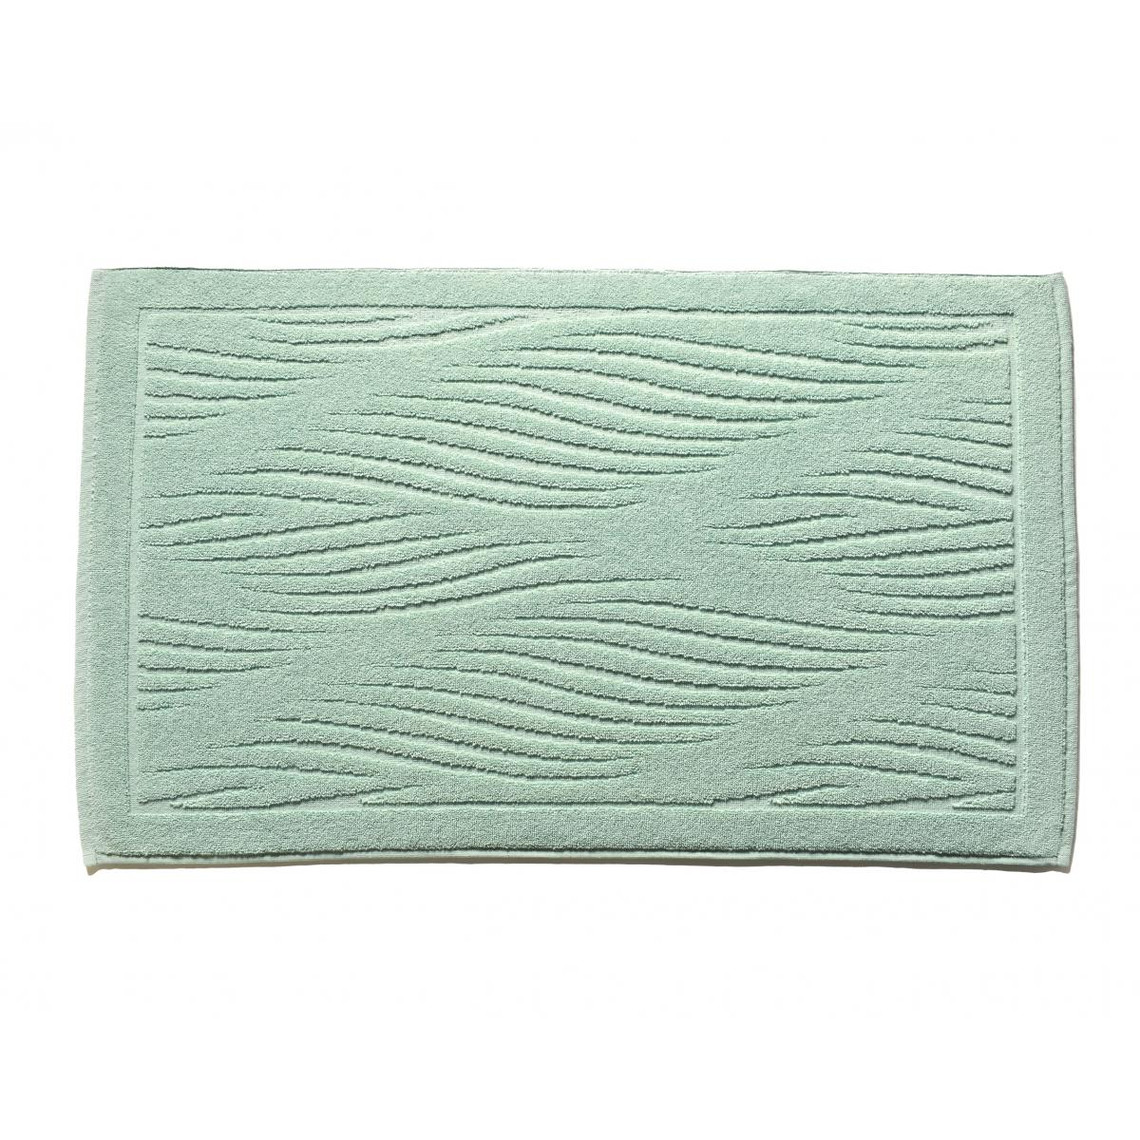 Tapis de bain motifs vagues vert amande- 800 g/m² 100% COTON